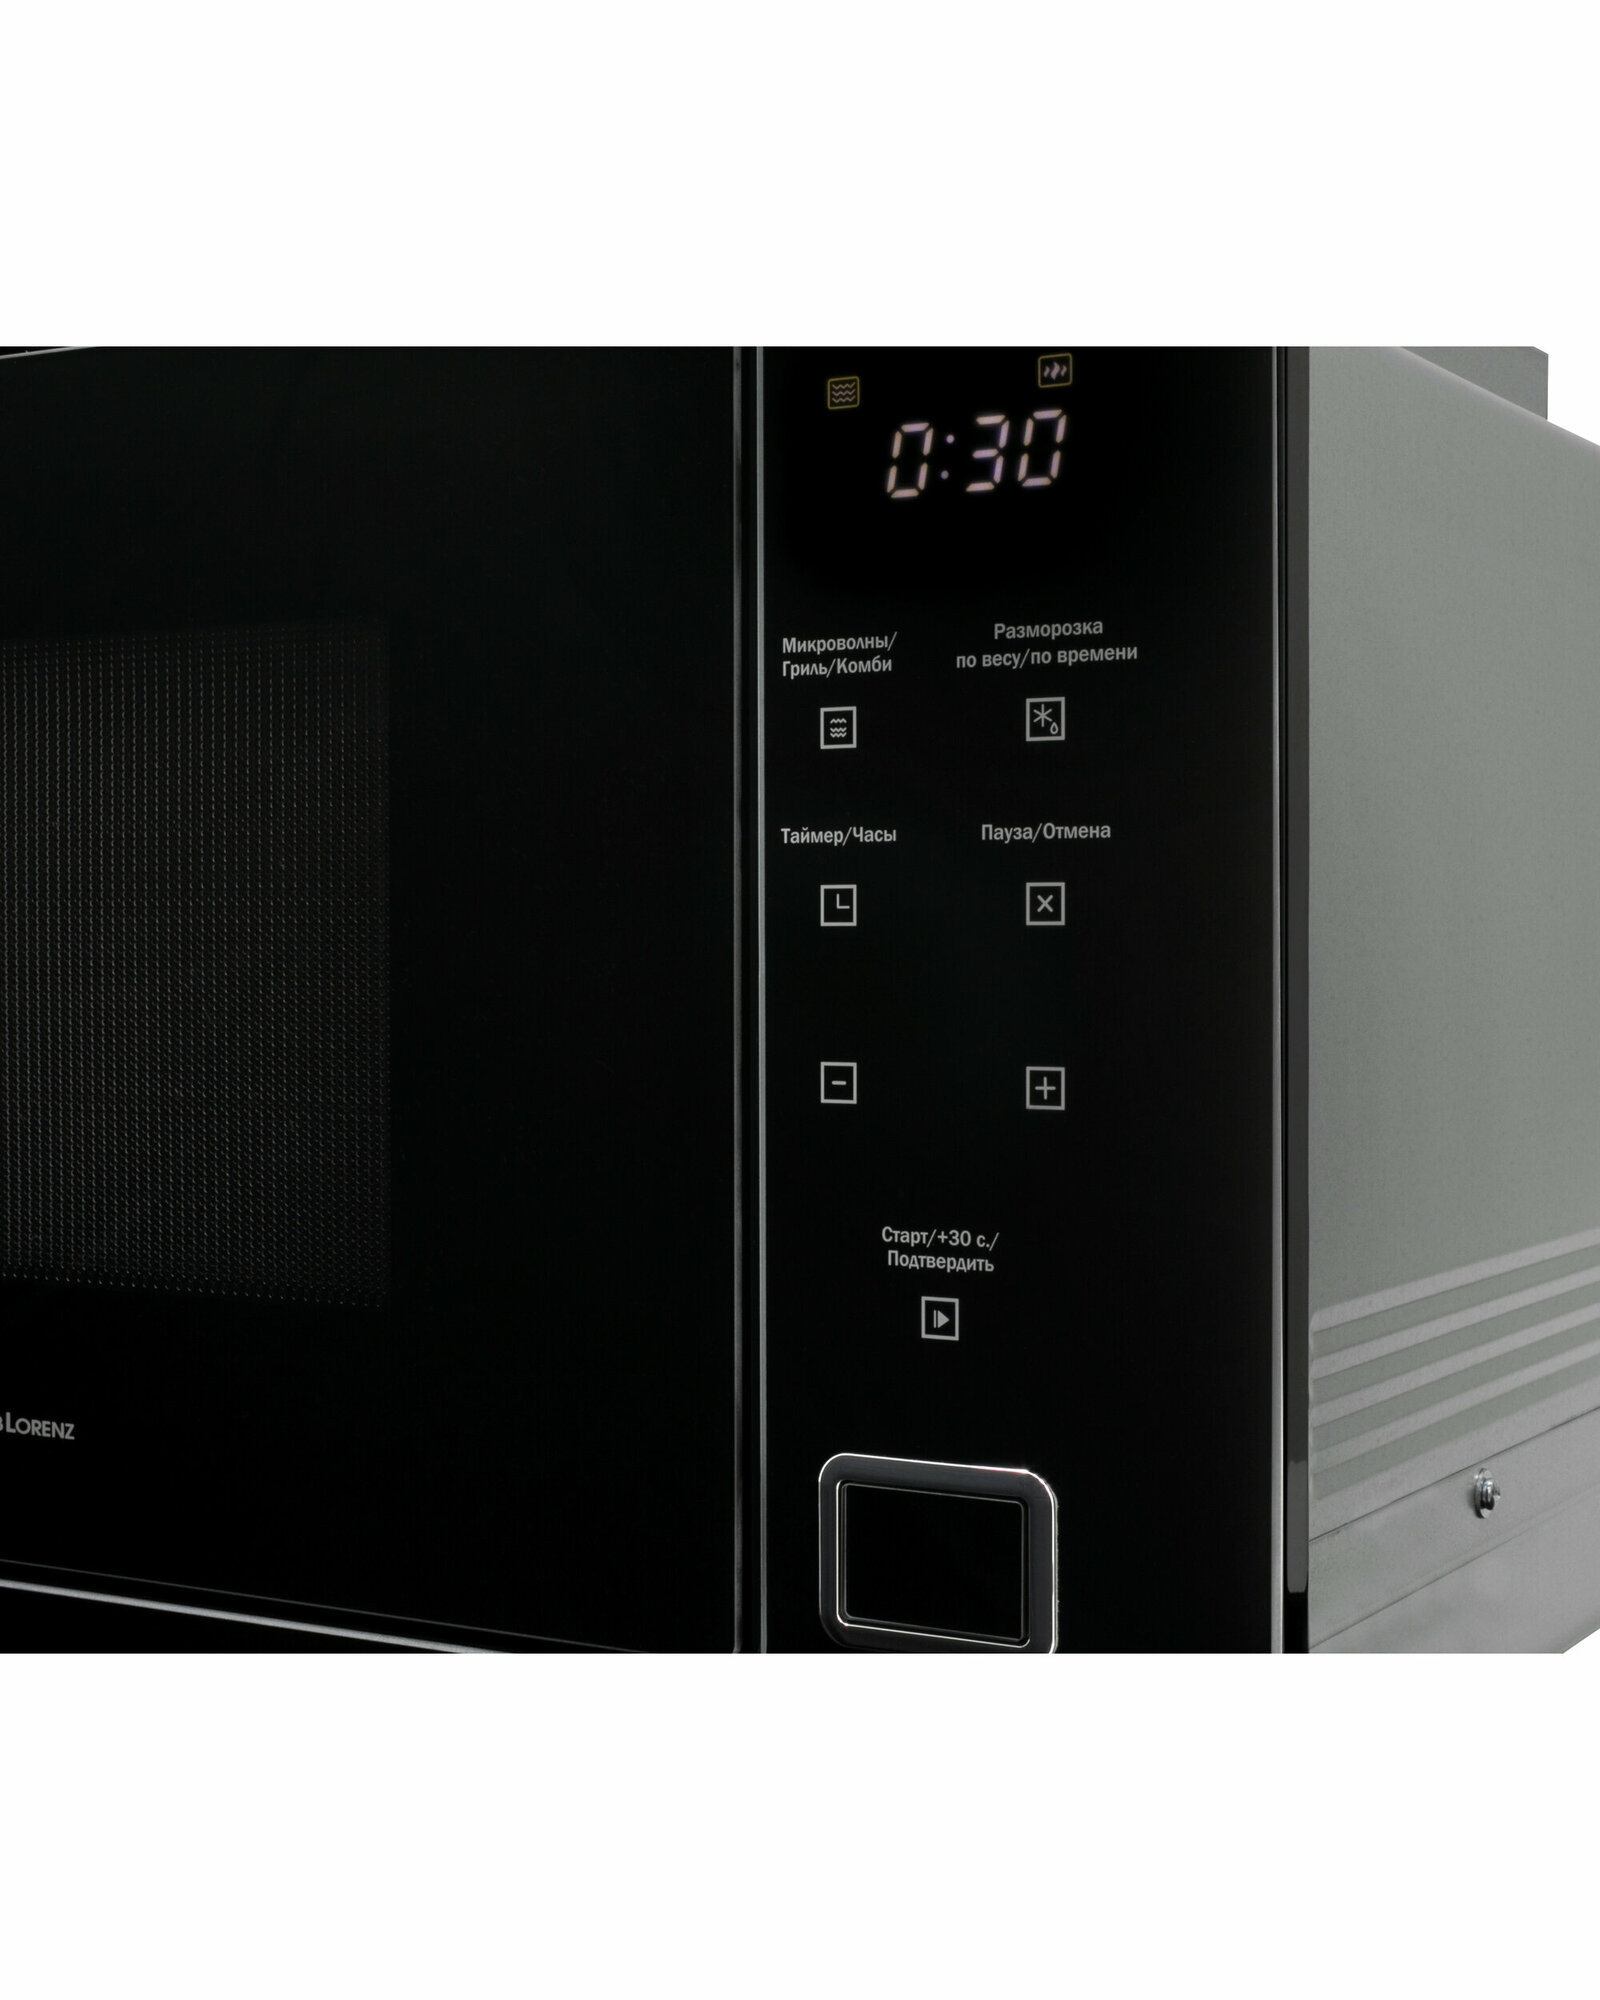 Встраиваемая микроволновая печь Schaub Lorenz SLM EY26D, черная, 25 л, 900 Вт, гриль, поворотный стол 315 мм